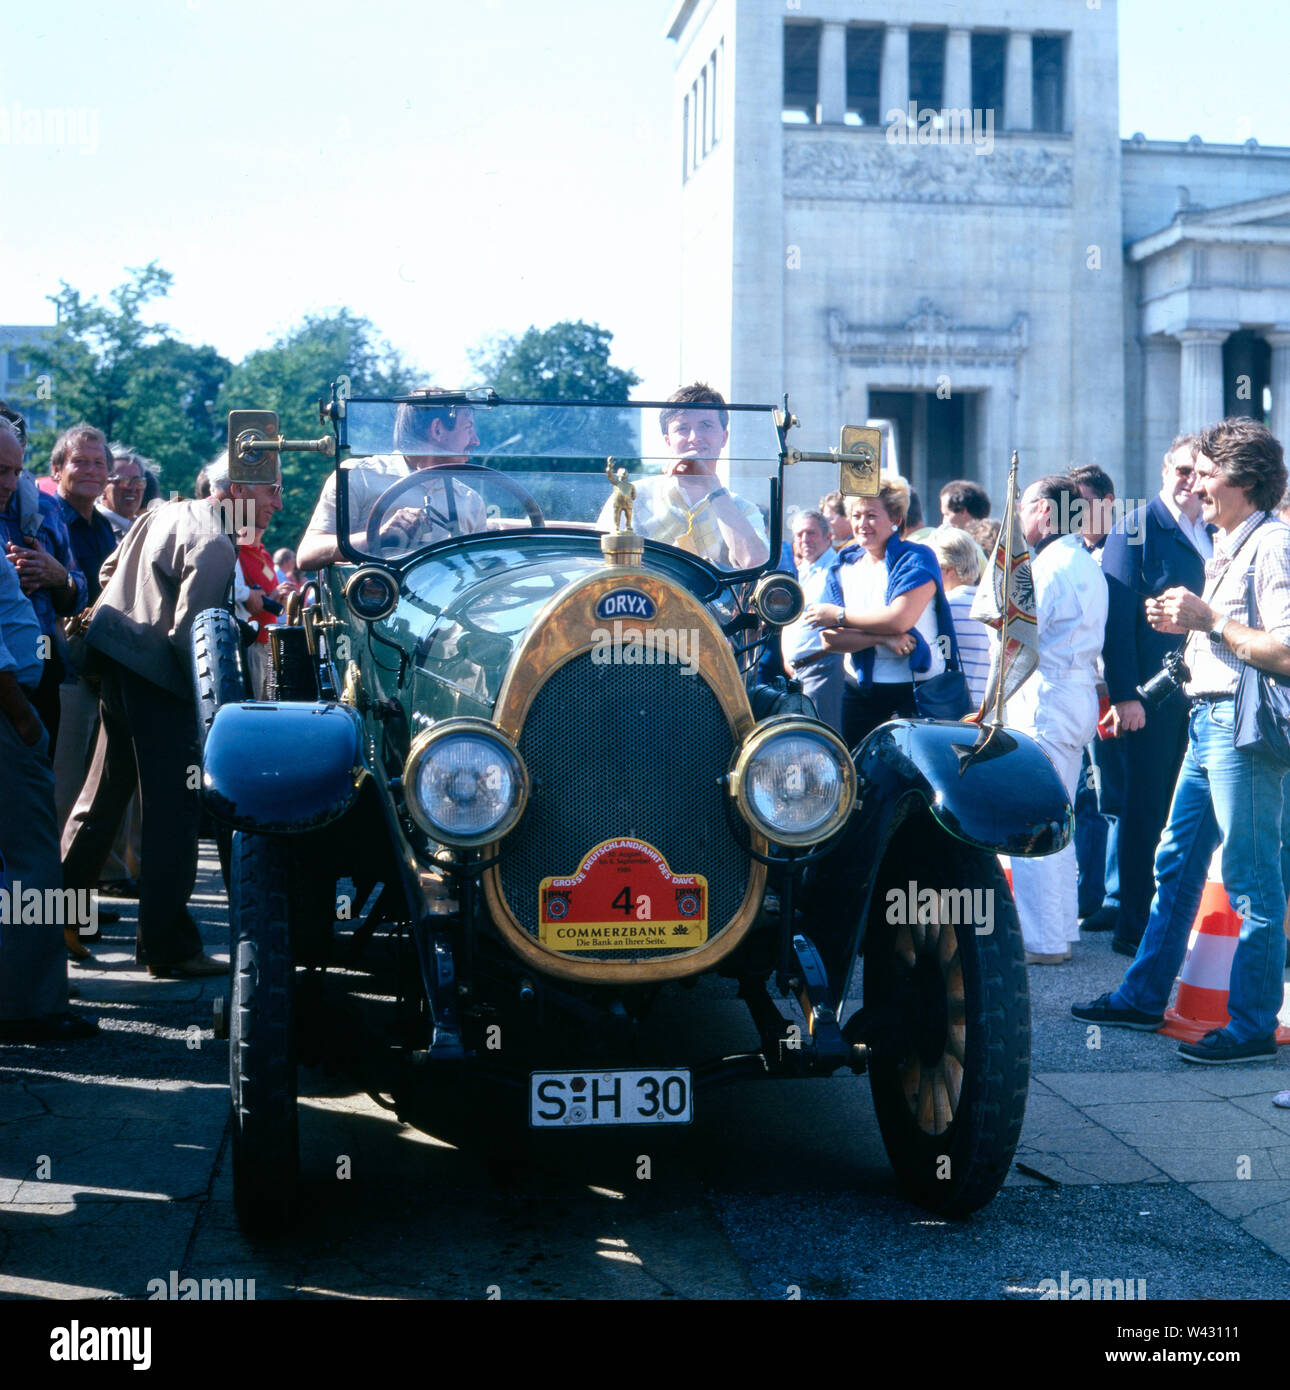 Ein Oryx Typ G aus dem Jahr 1913 mit einem 8 Zylinder Motor fährt 5/6 einer Oldtimershow in München Ende der 1980er Jahre vor. Oryx Typ G von 1913 mit einem 4-Zylinder Motor treibt bei einem Oldtimer Show in München in den späten 1980er Jahren. Stockfoto